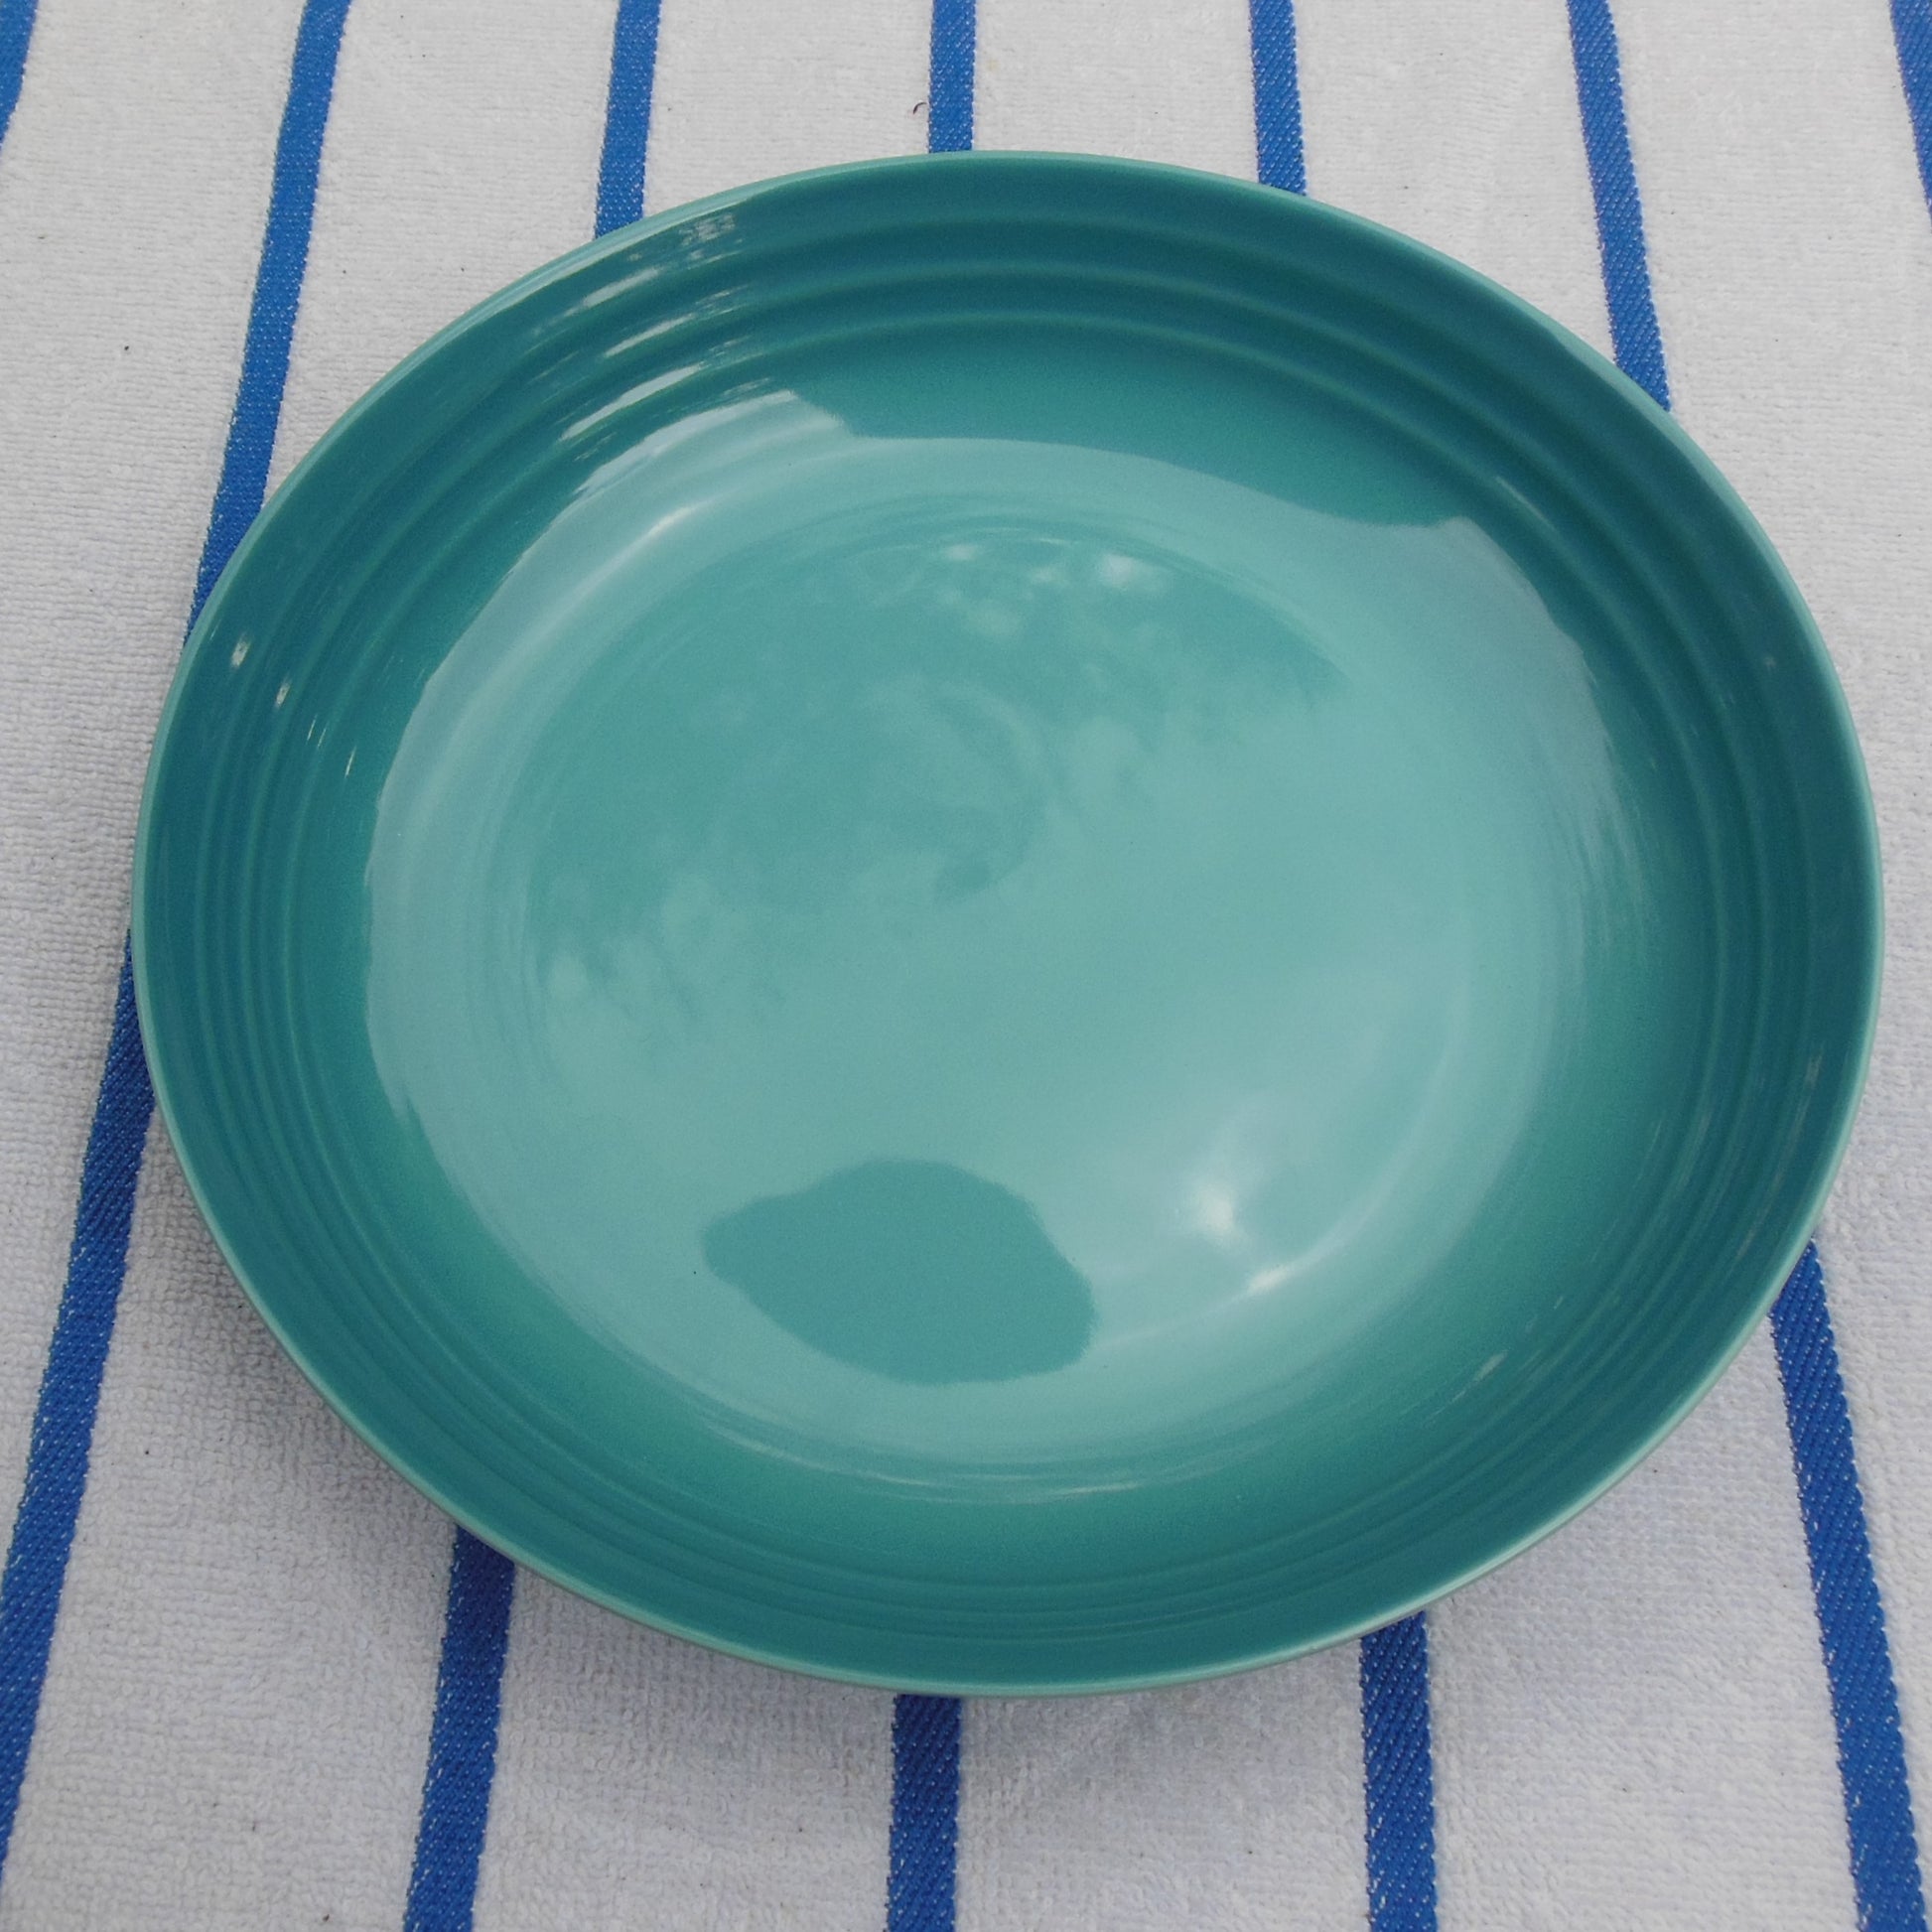 Le Creuset Stoneware Caribbean Blue Teal - 6 Salad Plates 8.5" unused